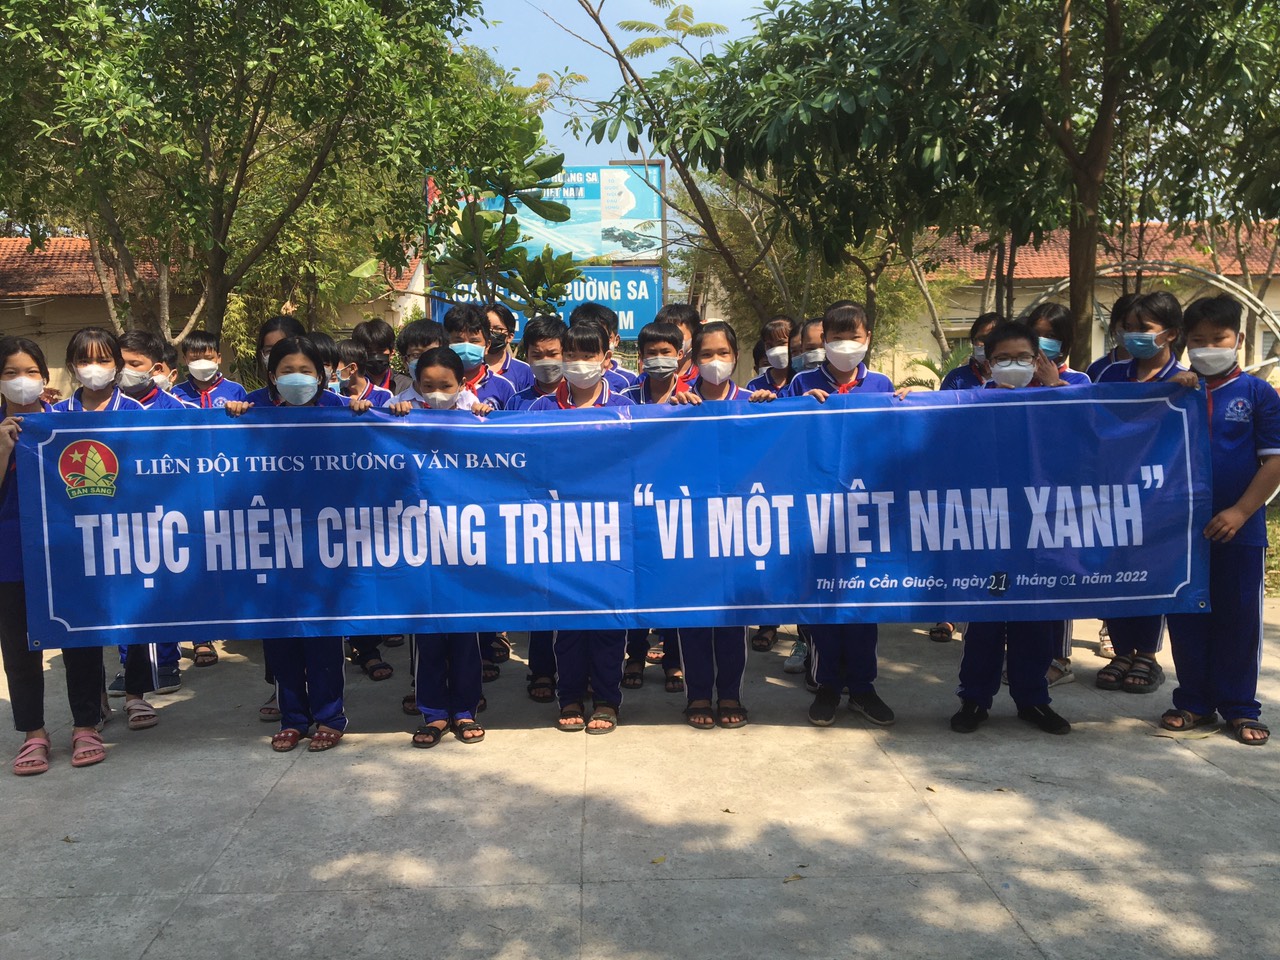 Chương trình :” Vì một Việt Nam xanh “